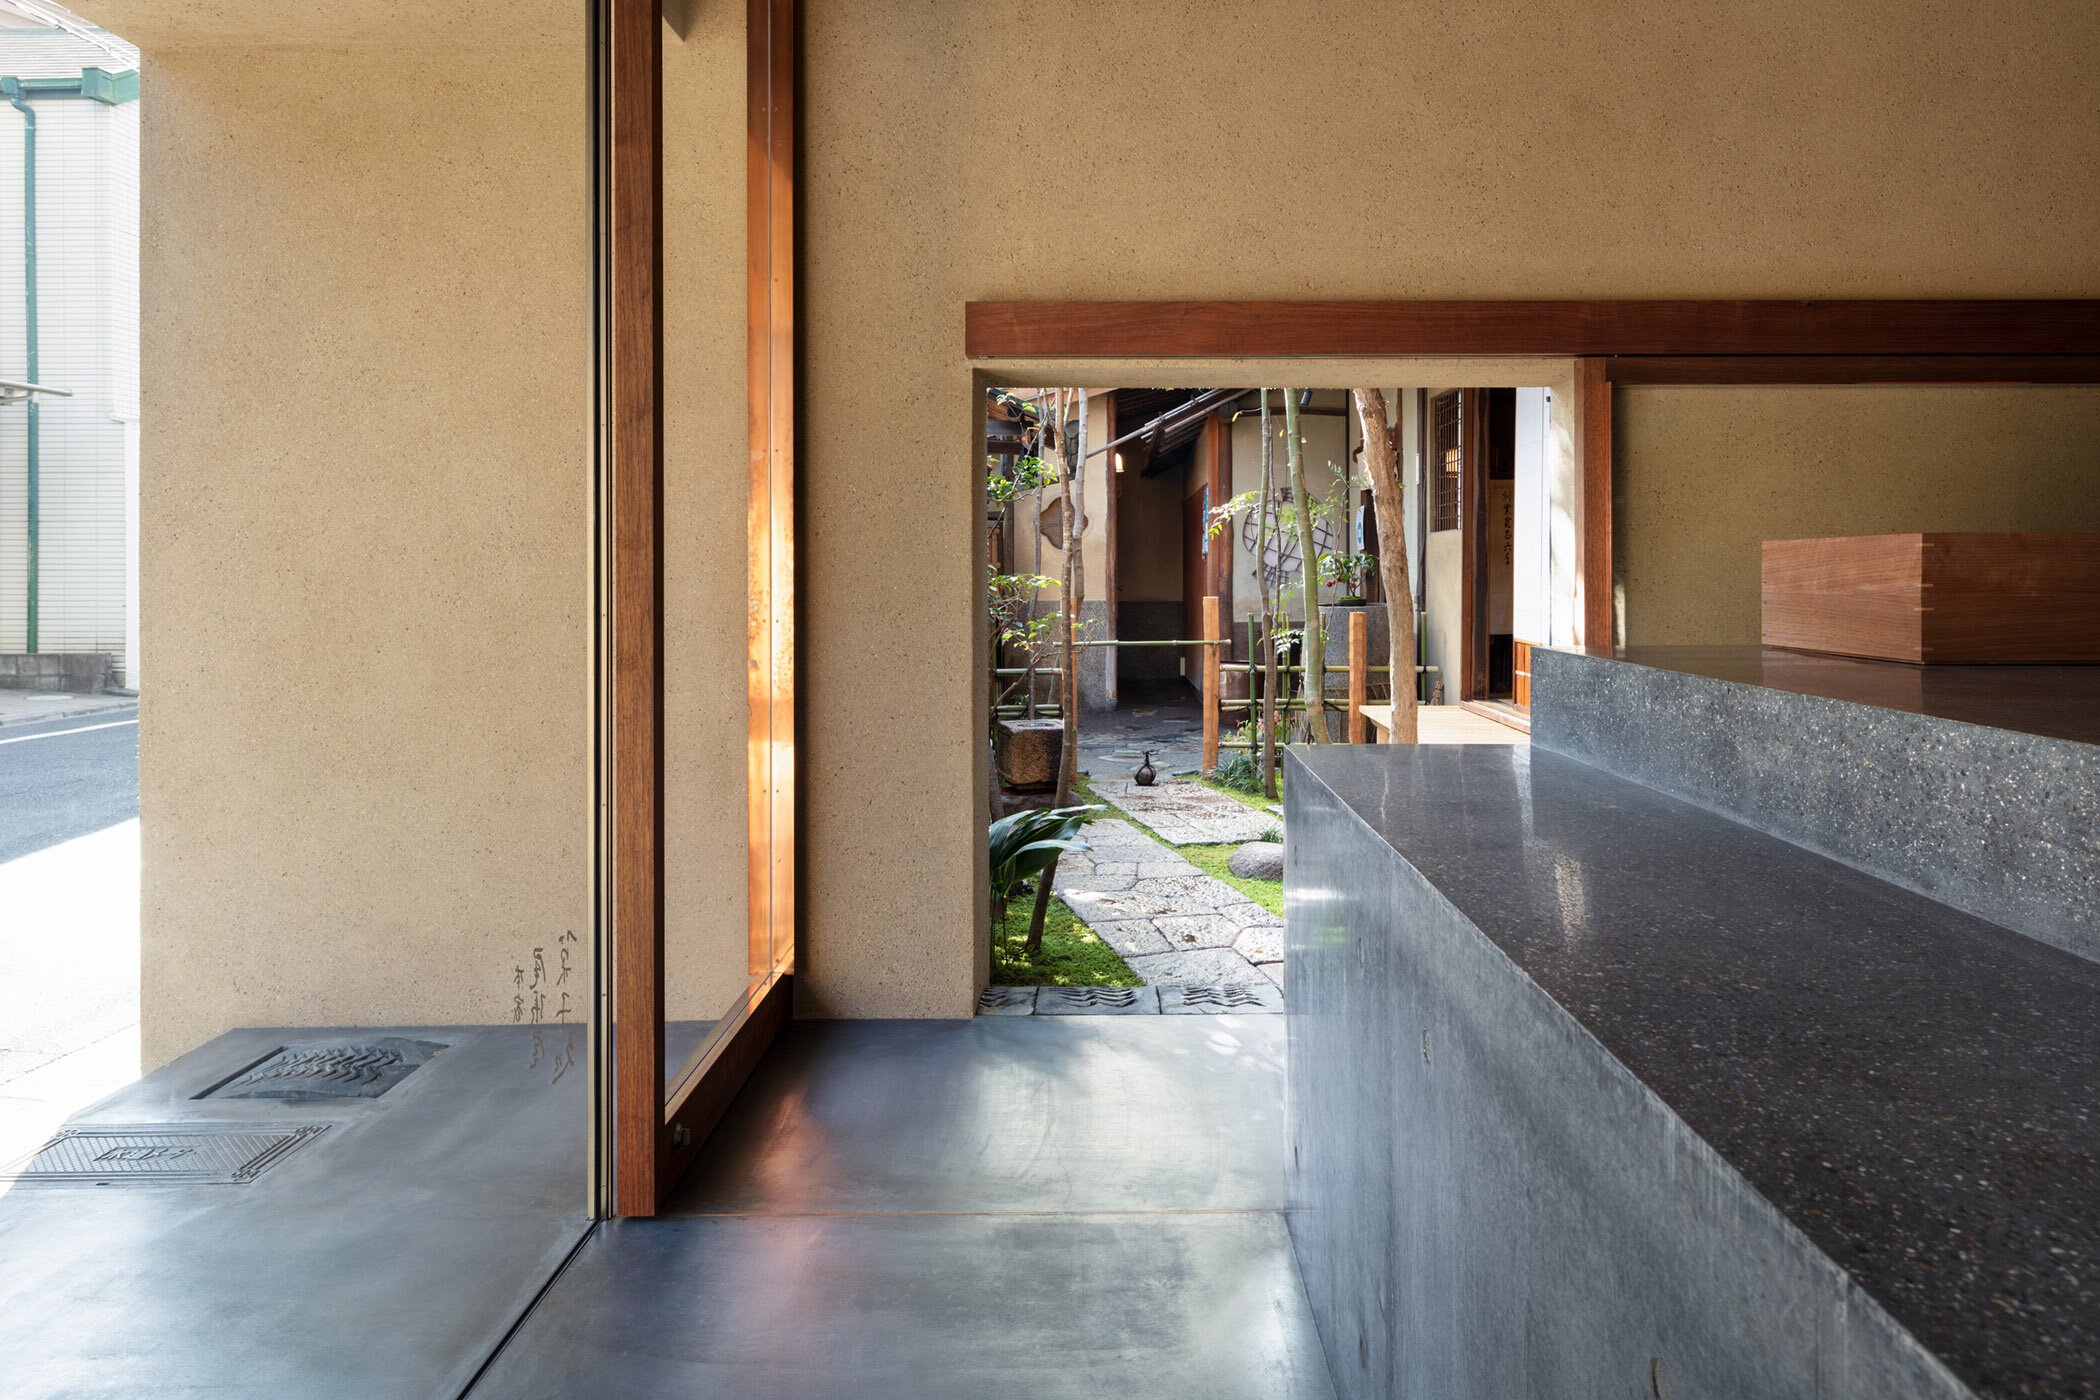  柳原照弘 Teruhiro Yanagihara Studioがインテリアデザインを手掛けた京都の尾張屋本店 菓子処。側面には庭園からのエントランスがある 